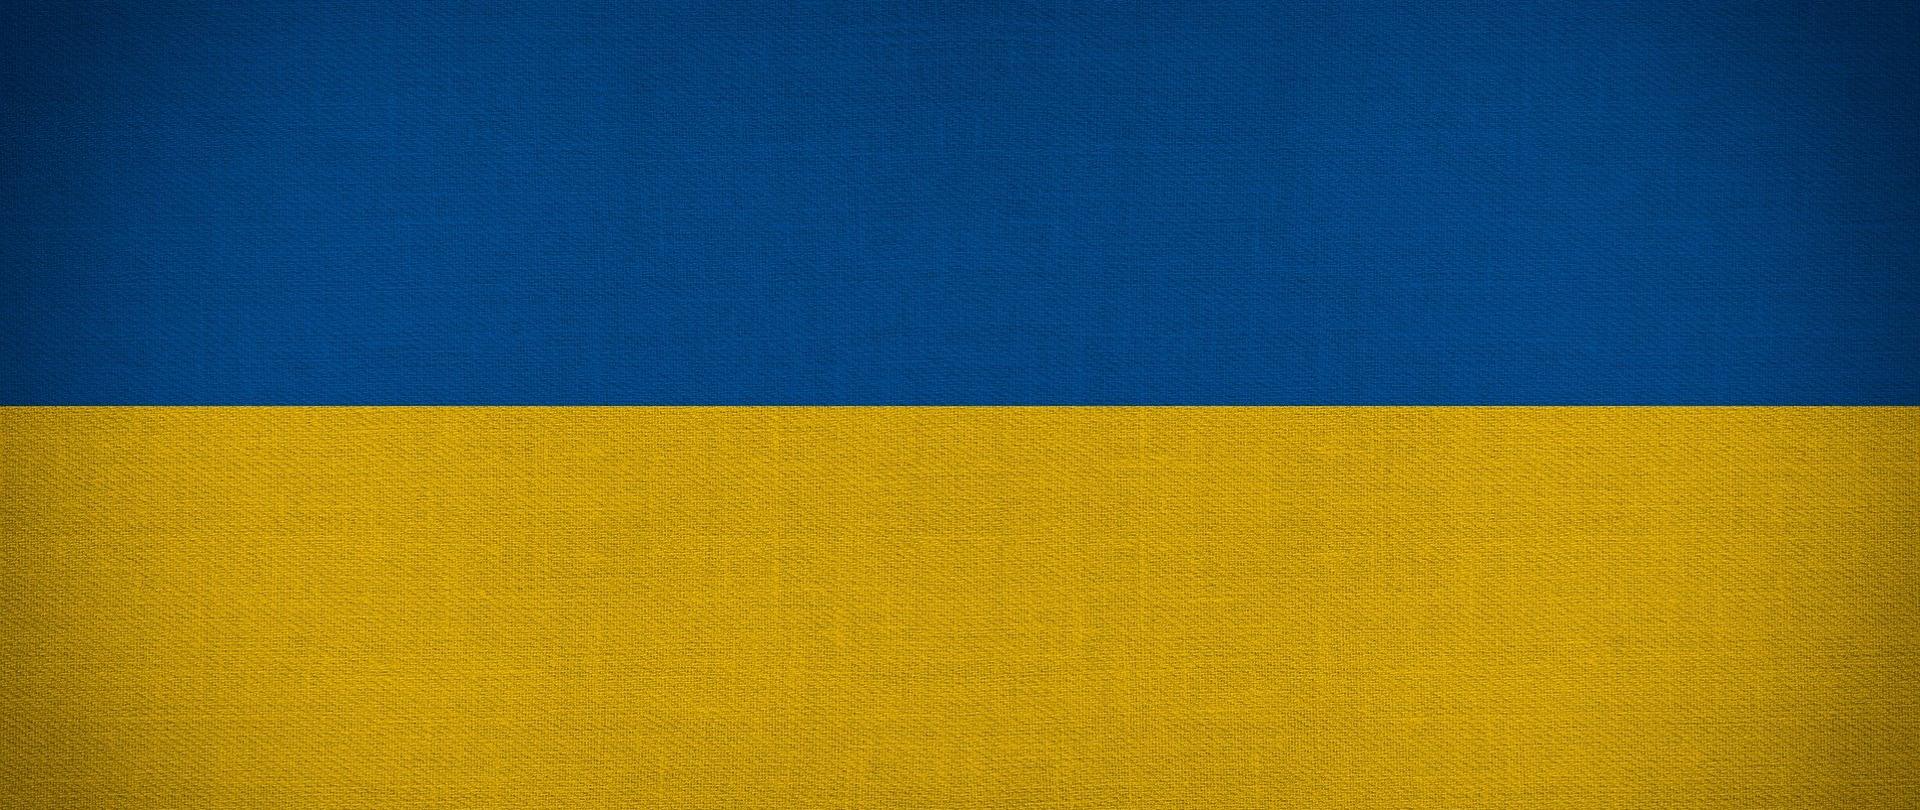 Flaga Ukrainy - na górze niebieska, na dole żółta.